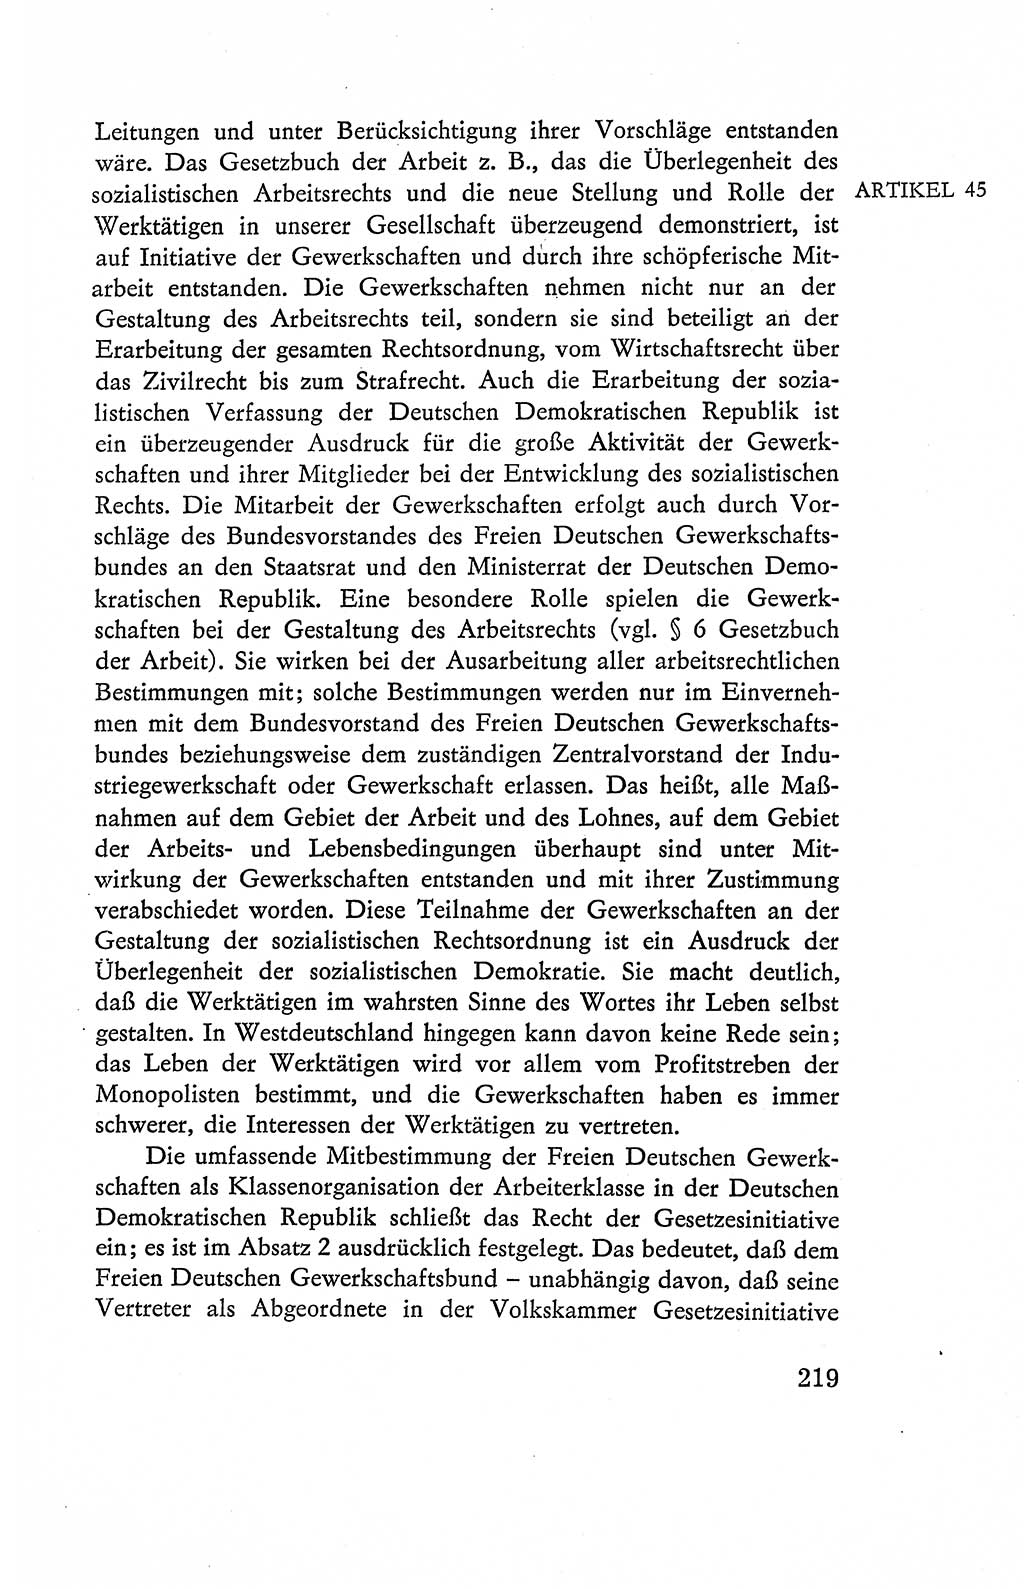 Verfassung der Deutschen Demokratischen Republik (DDR), Dokumente, Kommentar 1969, Band 2, Seite 219 (Verf. DDR Dok. Komm. 1969, Bd. 2, S. 219)